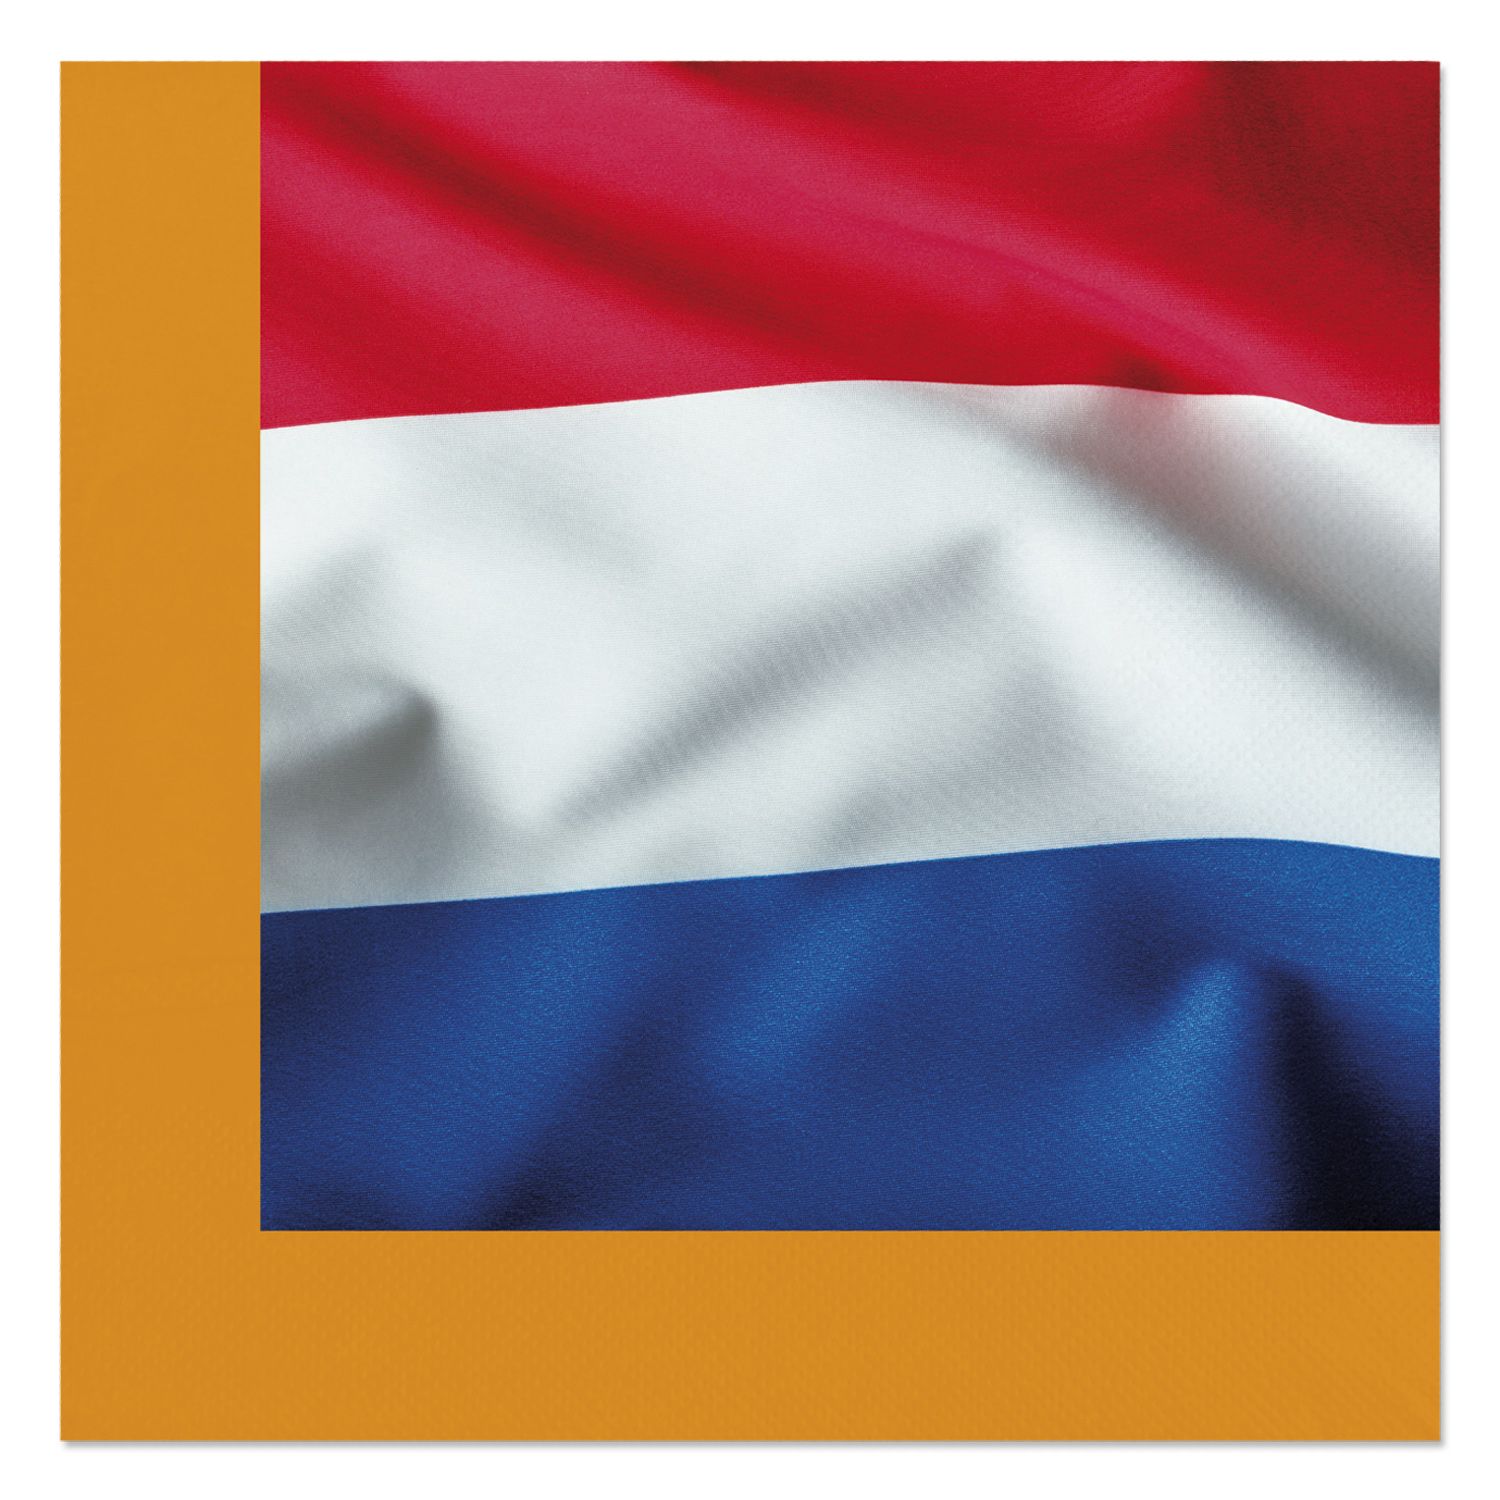 Servetten koningsdag nederlandse vlag 20 stuks